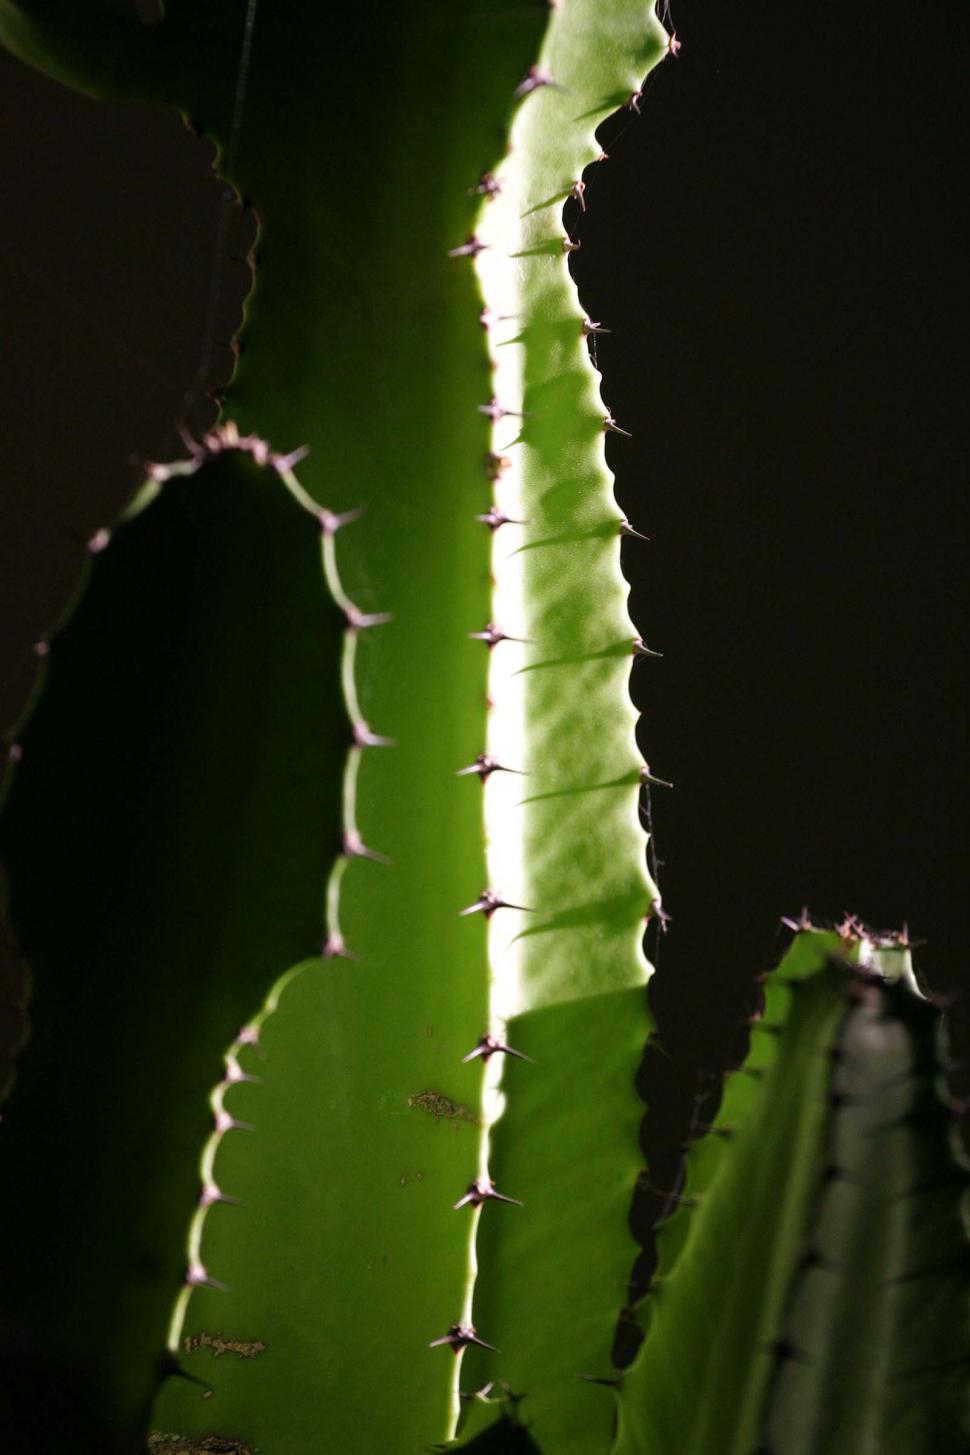 Free Image of Dark cactus detail 